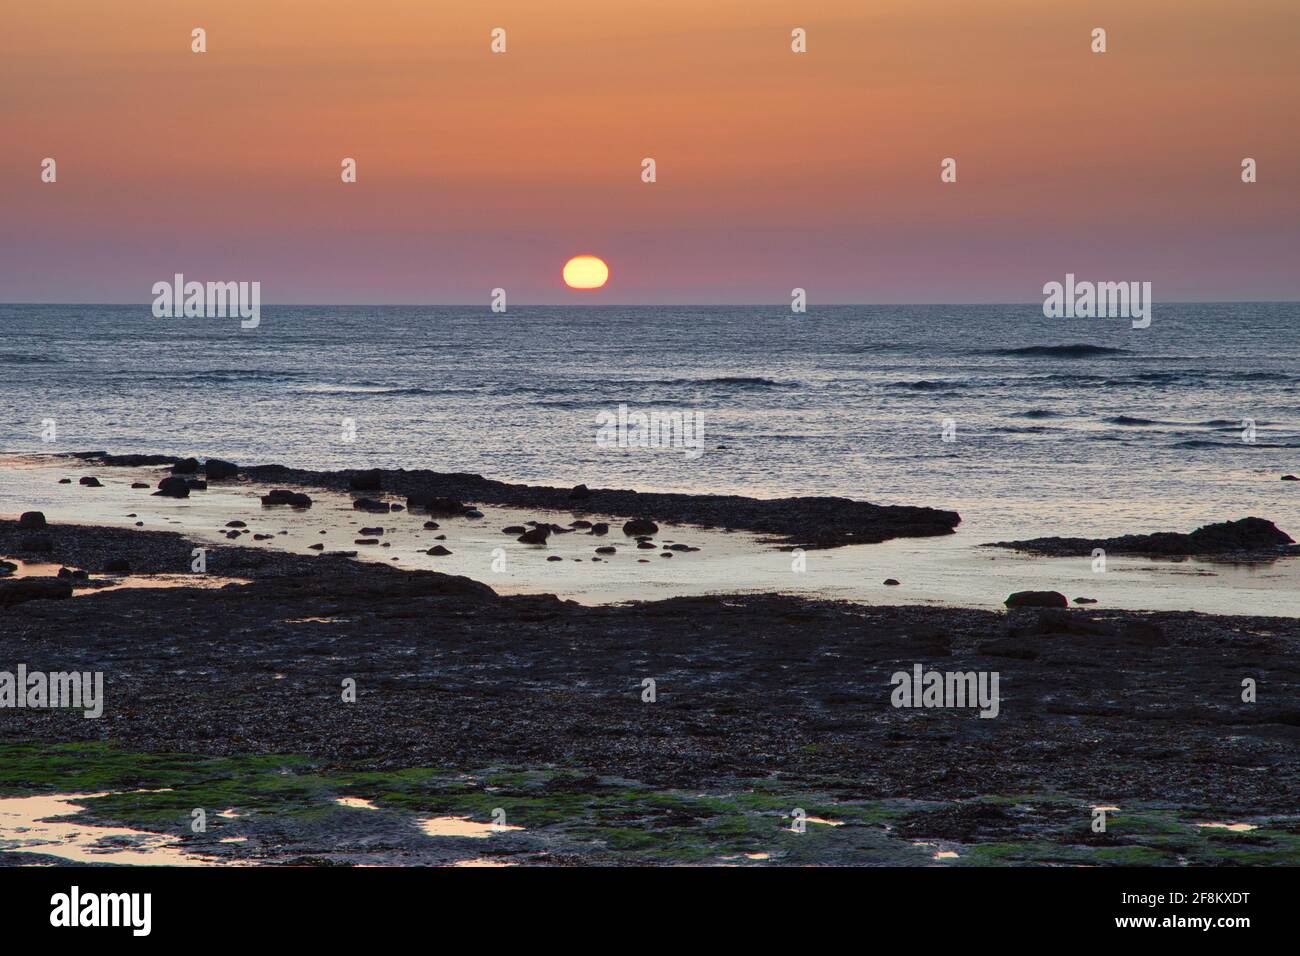 Sunrise over the Sea Stock Photo